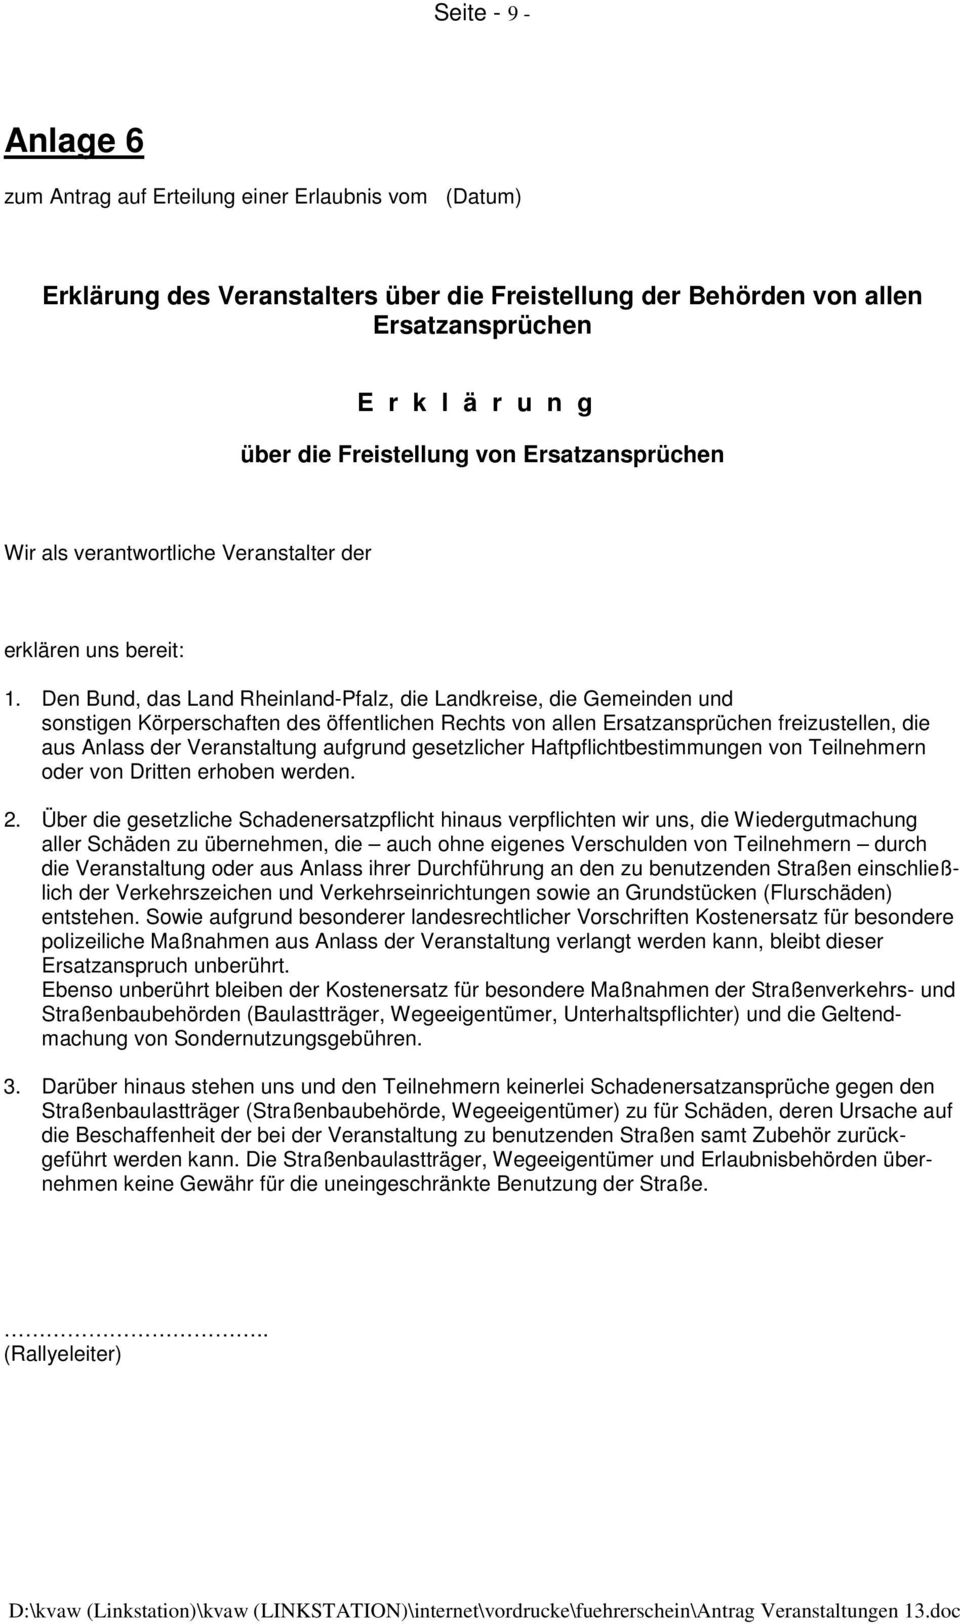 Den Bund, das Land Rheinland-Pfalz, die Landkreise, die Gemeinden und sonstigen Körperschaften des öffentlichen Rechts von allen Ersatzansprüchen freizustellen, die aus Anlass der Veranstaltung